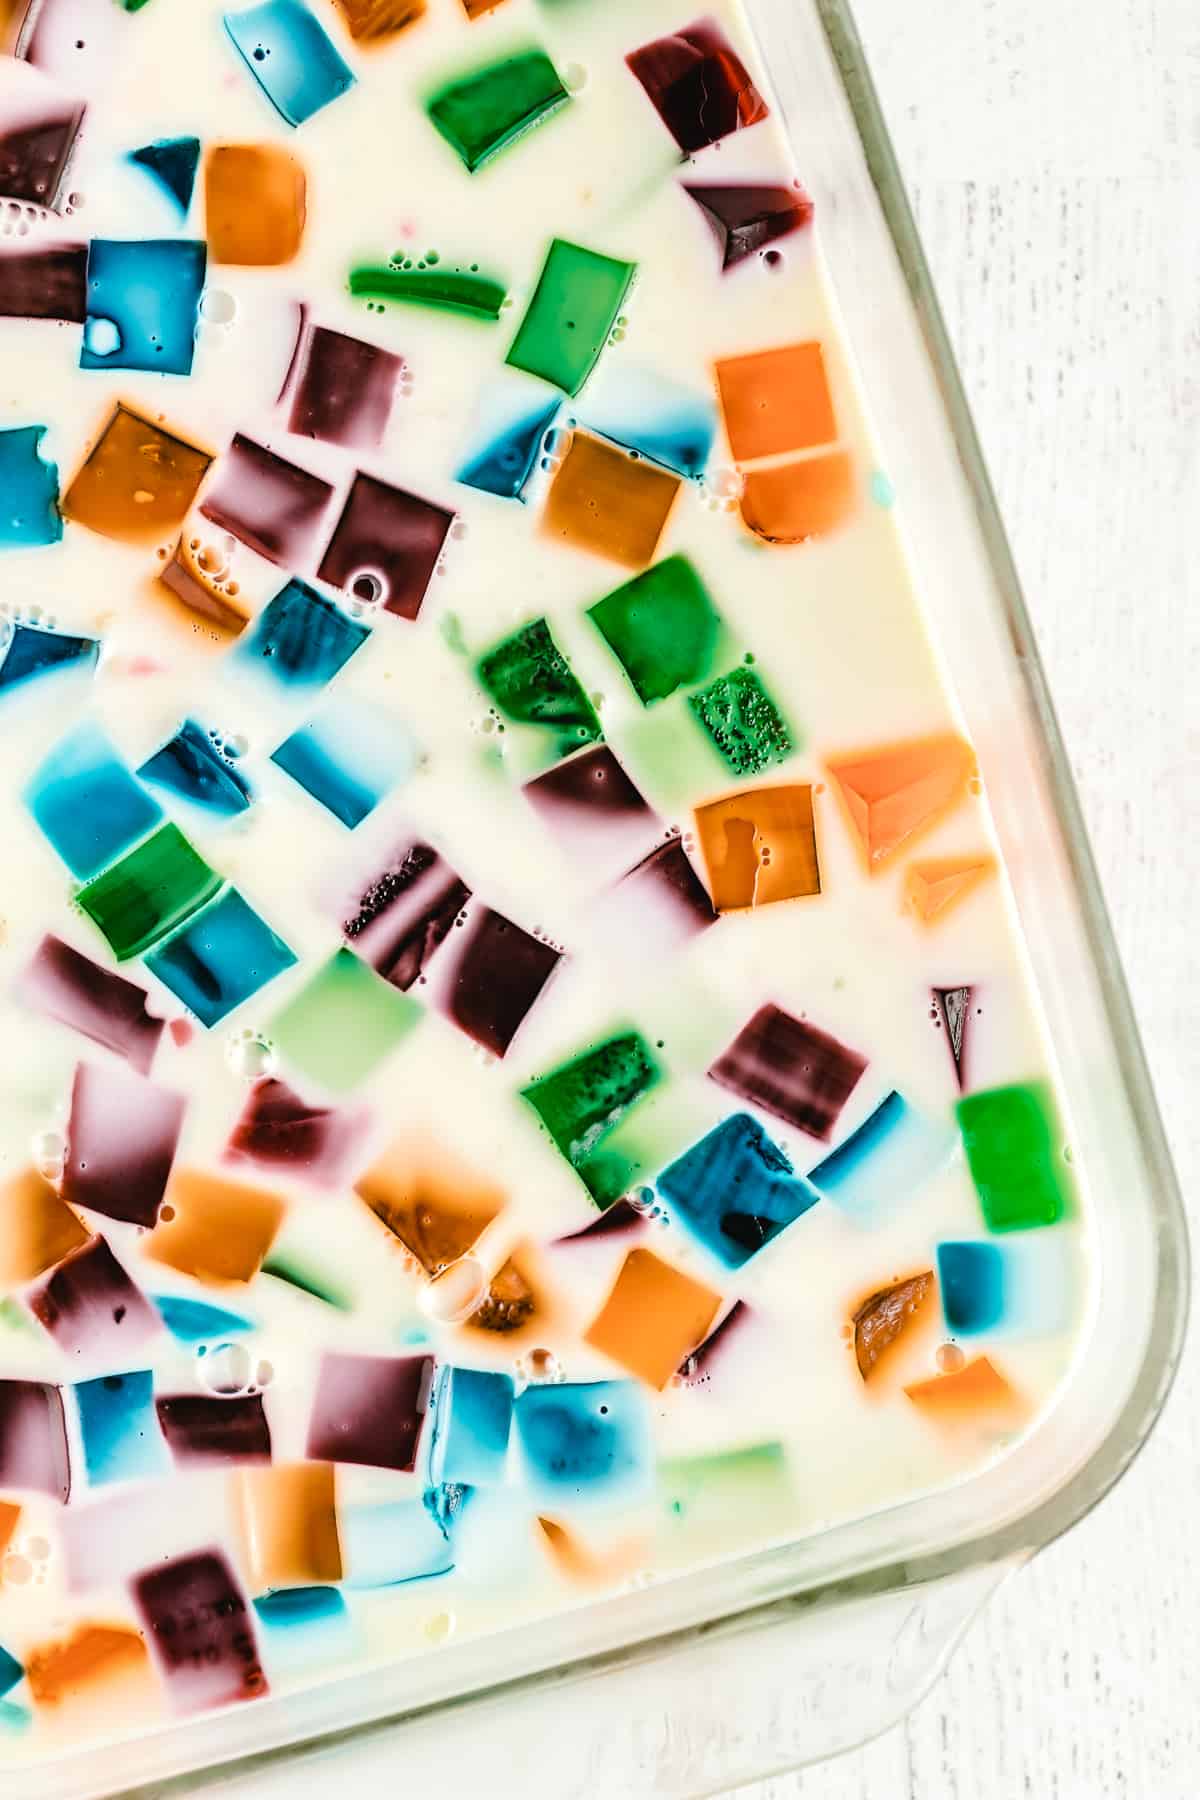 Jello with colored jello cubes in a glass dish